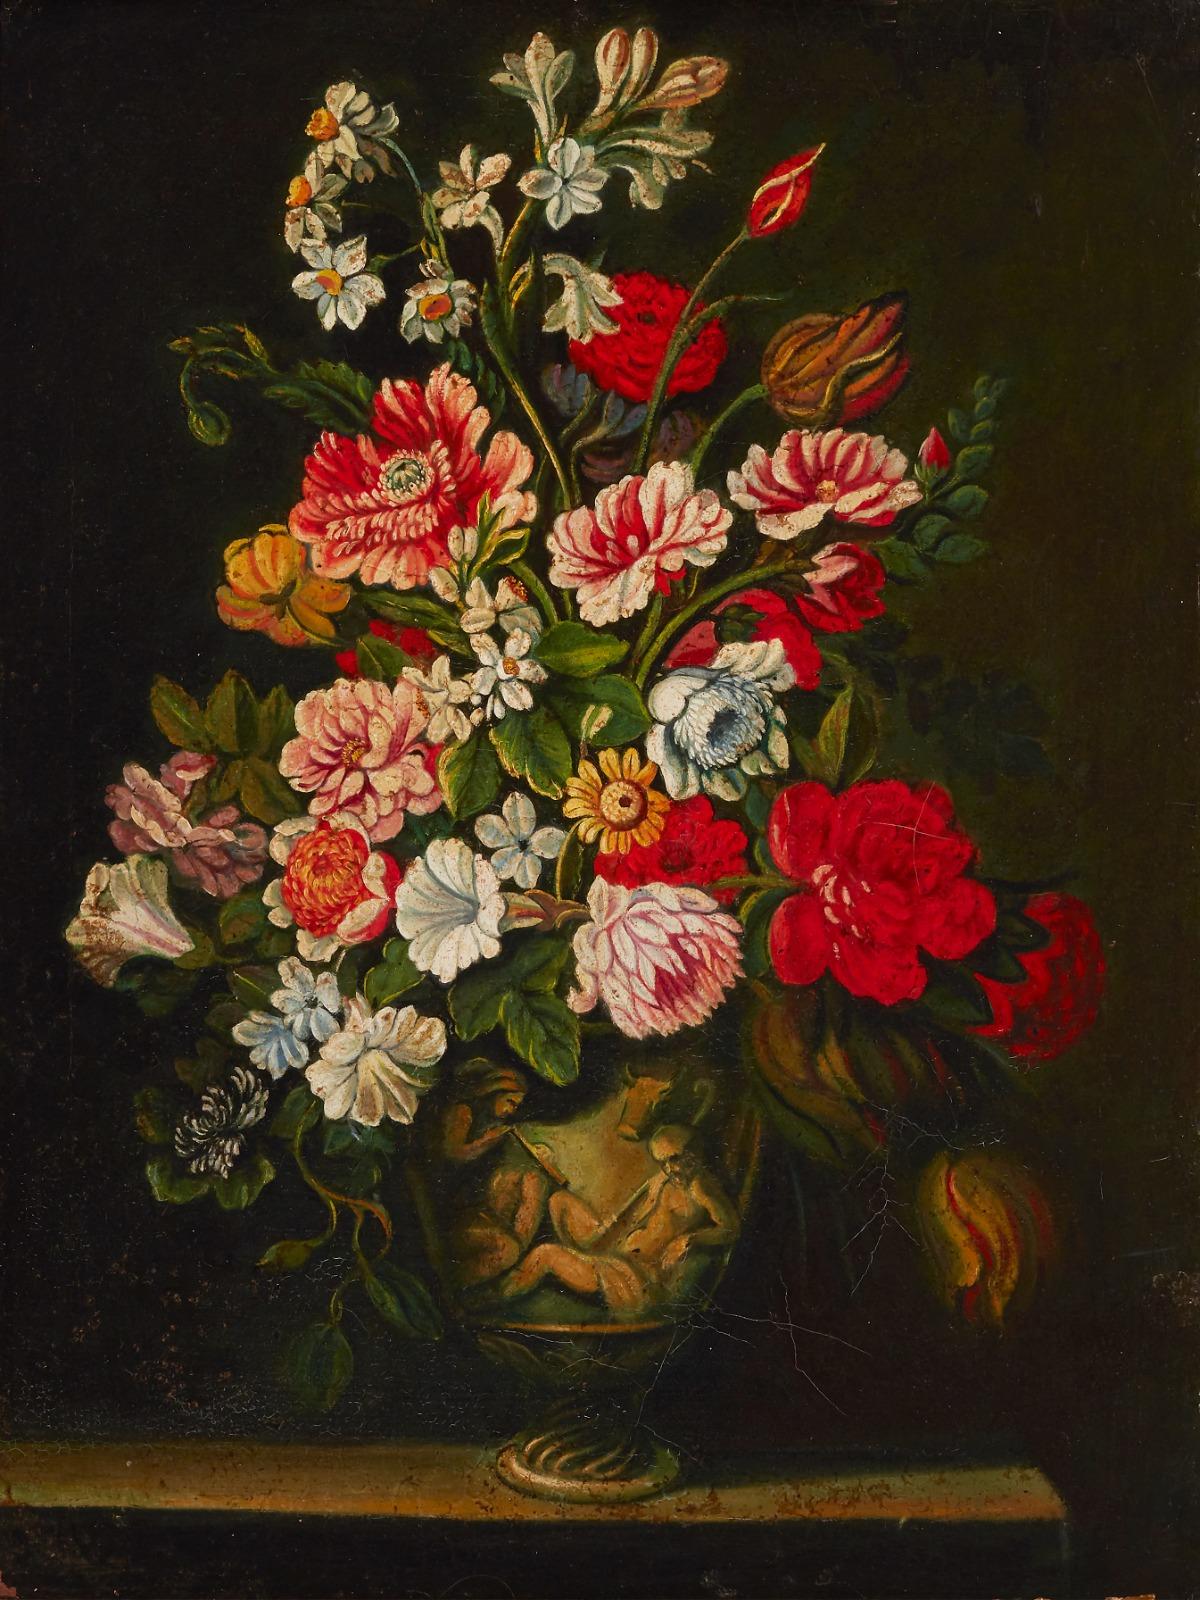 Still-Life Painting Miguel Canals Studio - Belle peinture à l'huile espagnole de style maître ancien dans un cadre orné de fleurs Vase orné